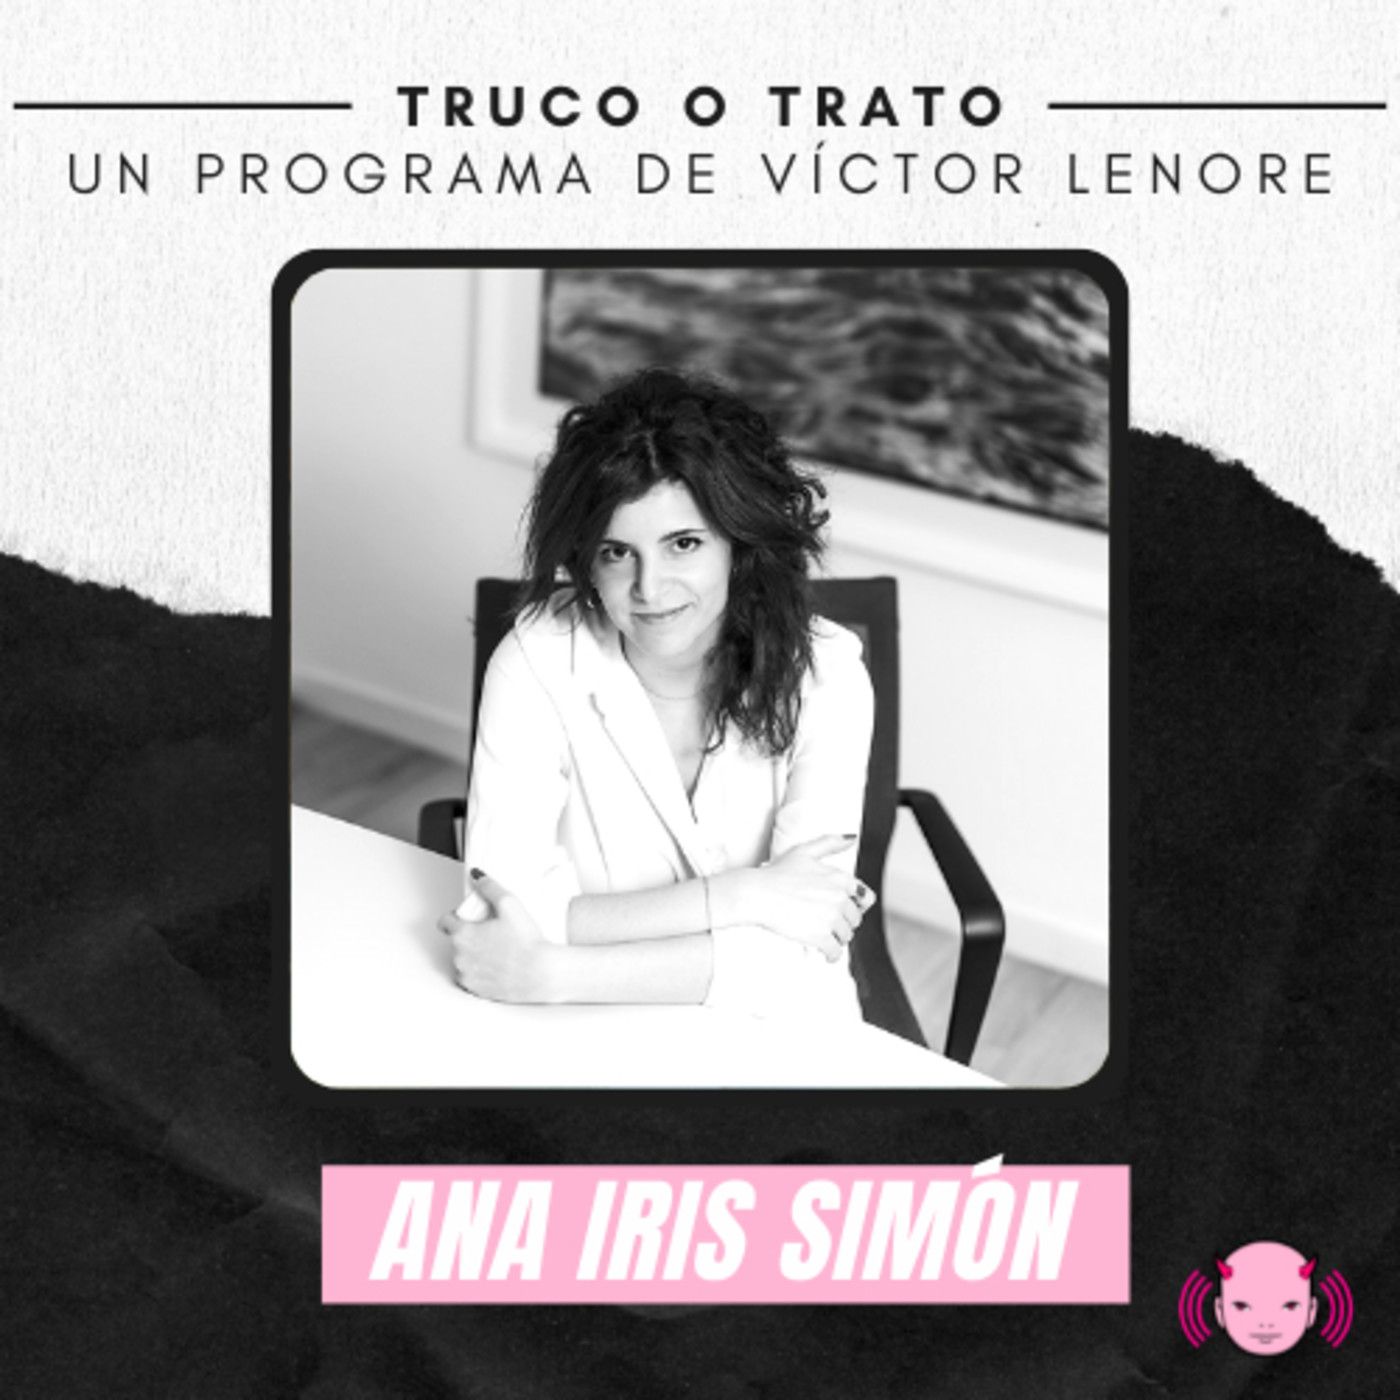 Truco o trato con Víctor Lenore #18: Ana Iris Simón